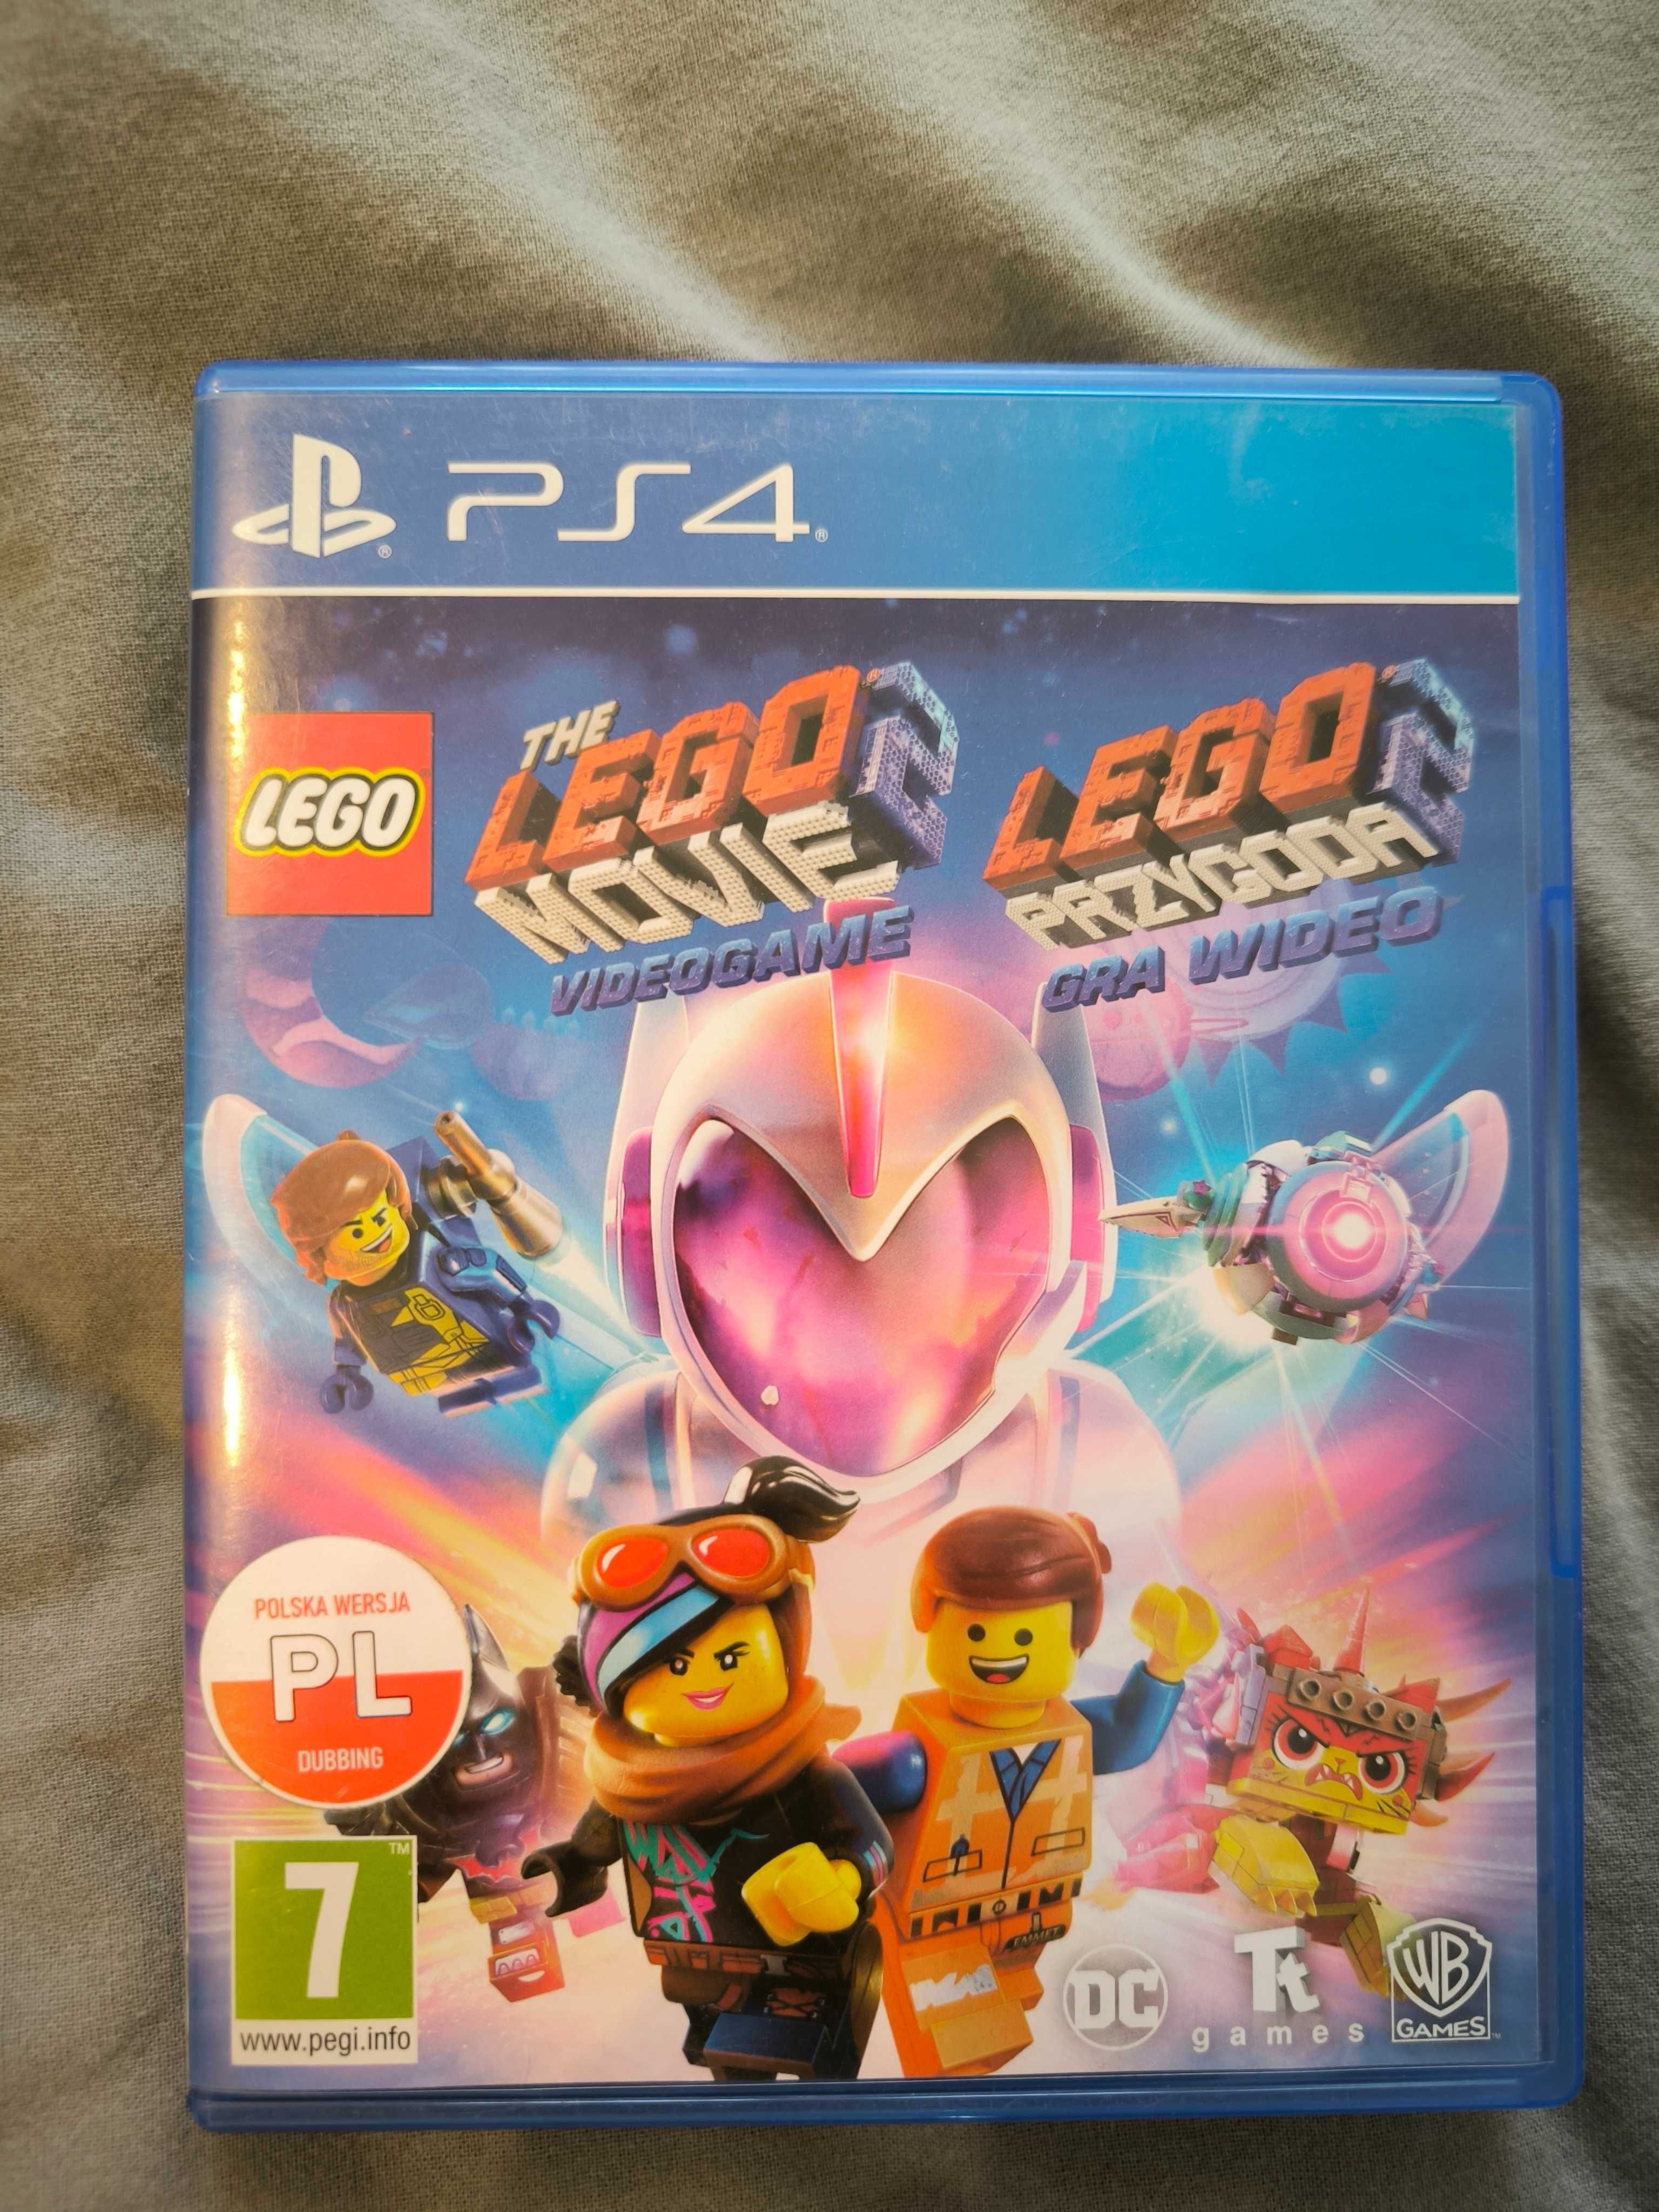 Gra dla 2 osób PS4 Lego Przygoda Gra Wideo (Lego Movie Videogame) PL d